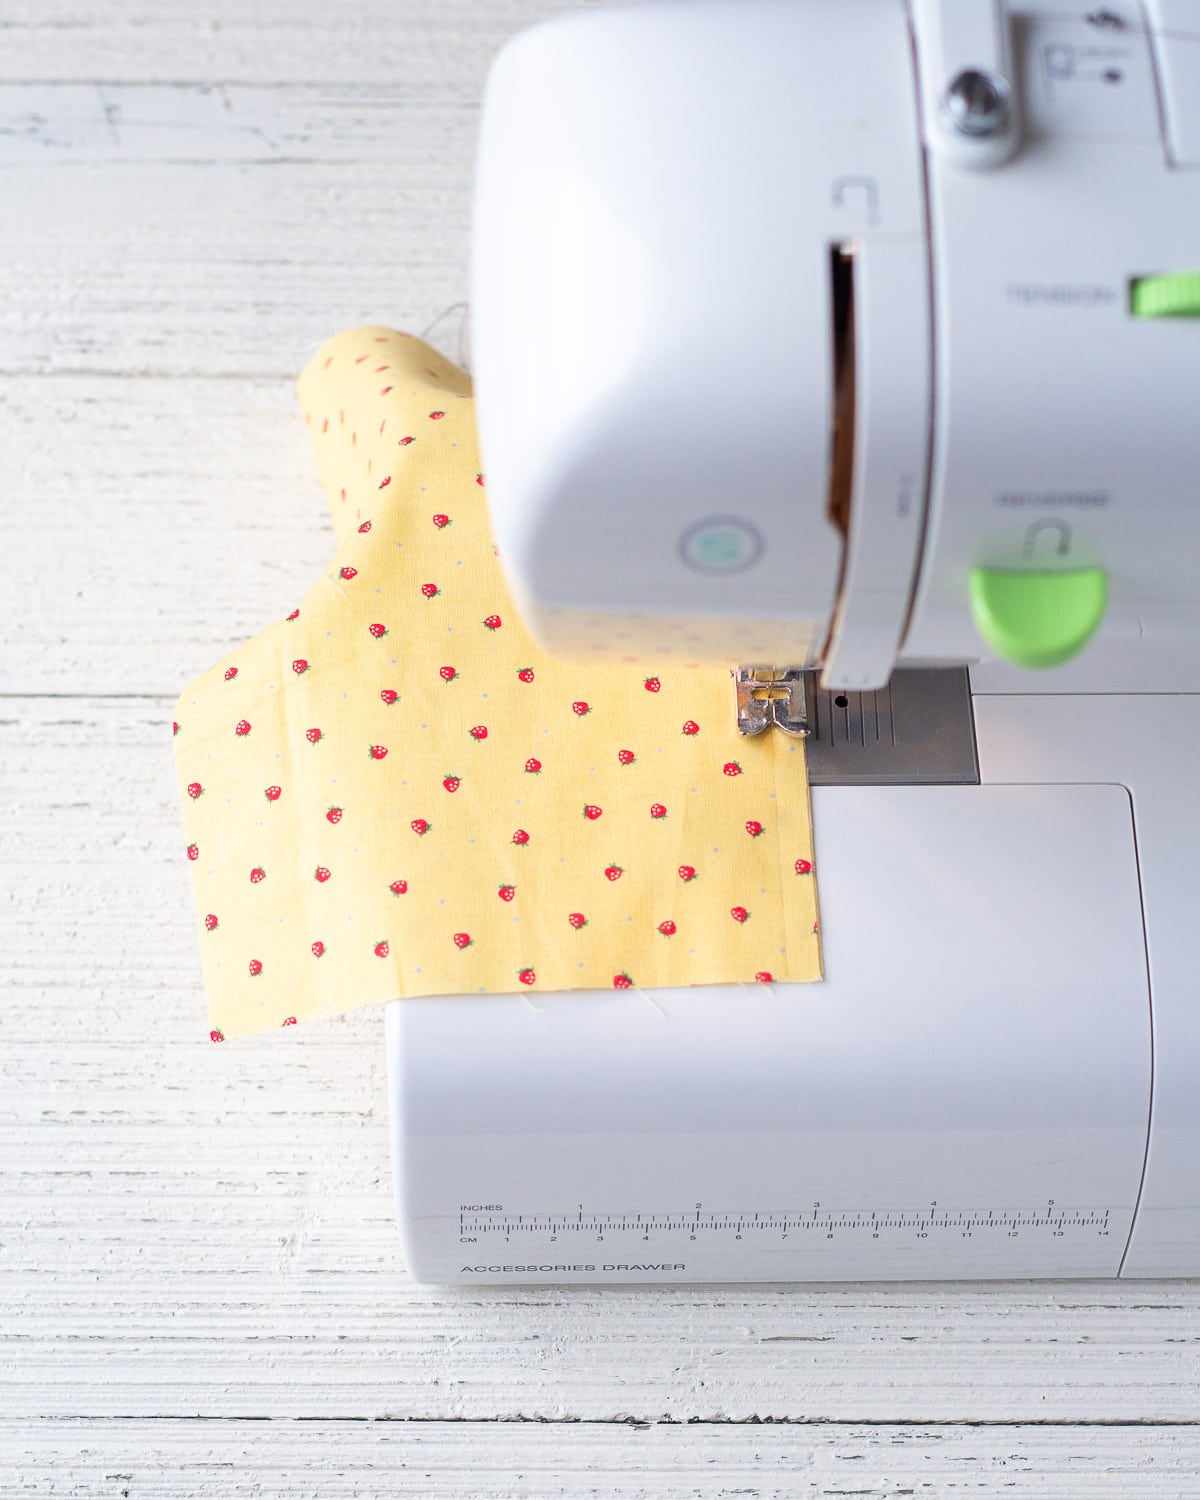 Stitching a seam on a sewing machine.